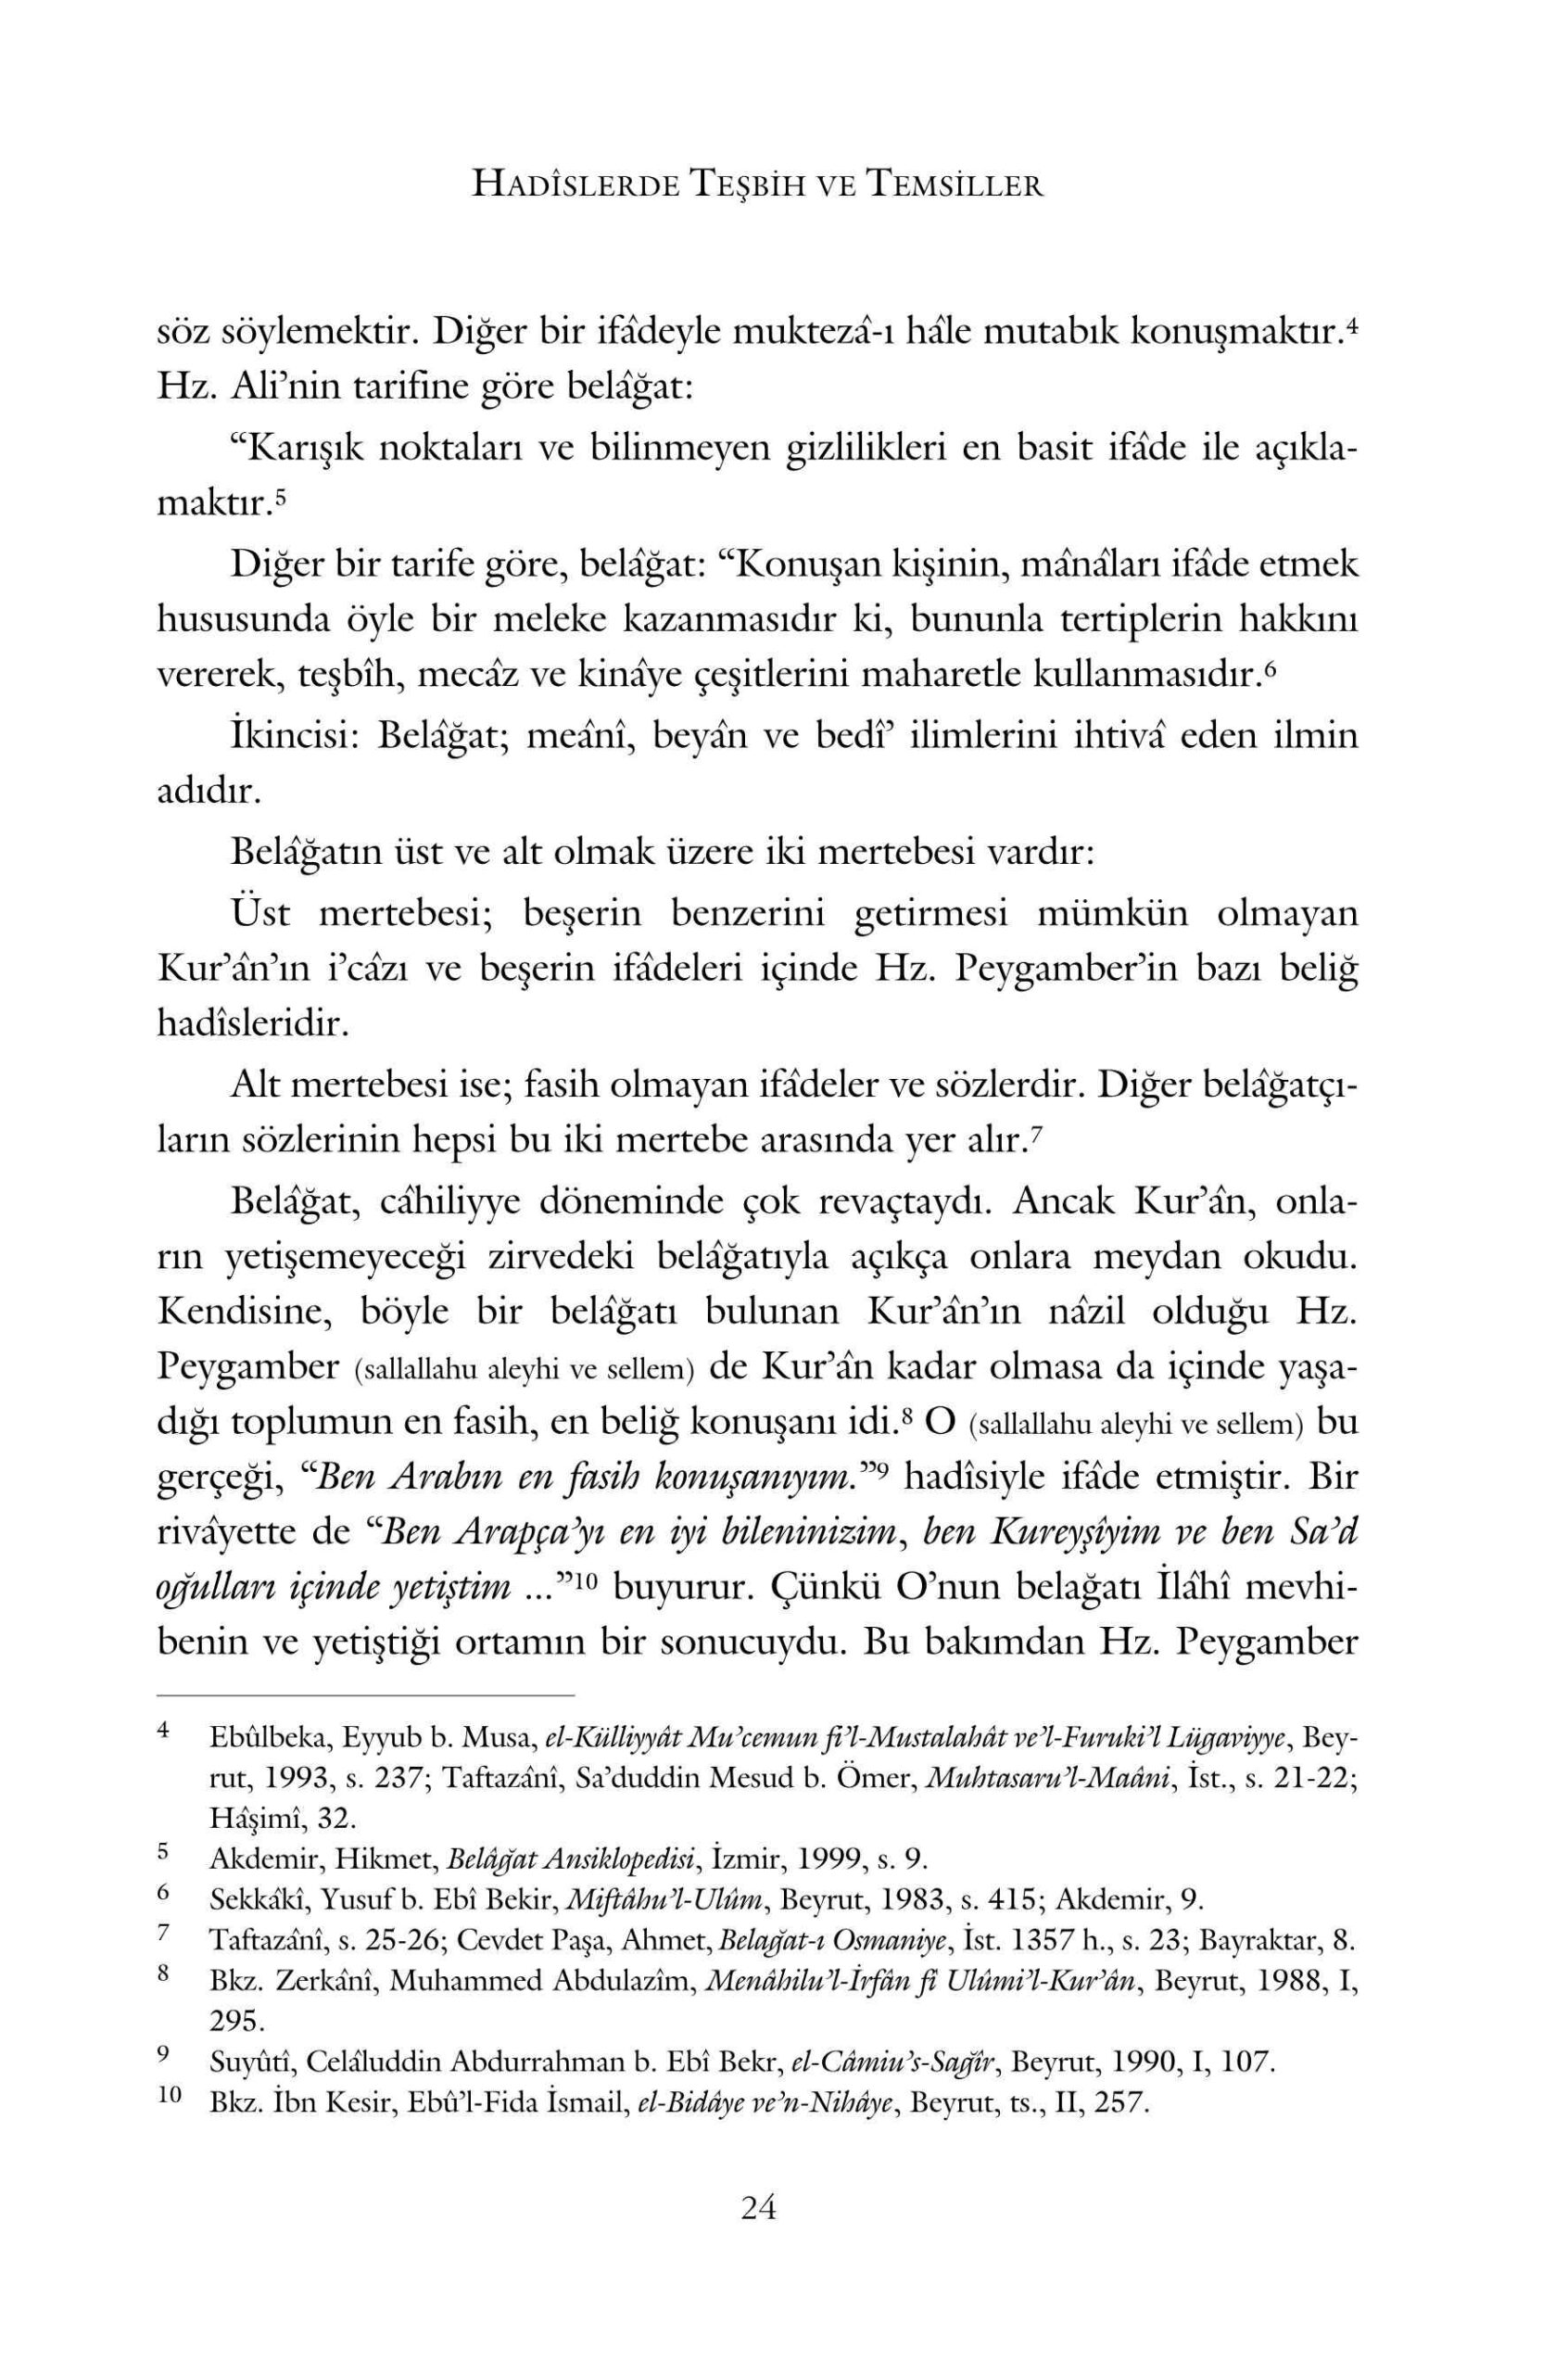 Adem Dolek - Hadislerde Tesbih ve Temsiller - IsikAkademiY.pdf, 327-Sayfa 